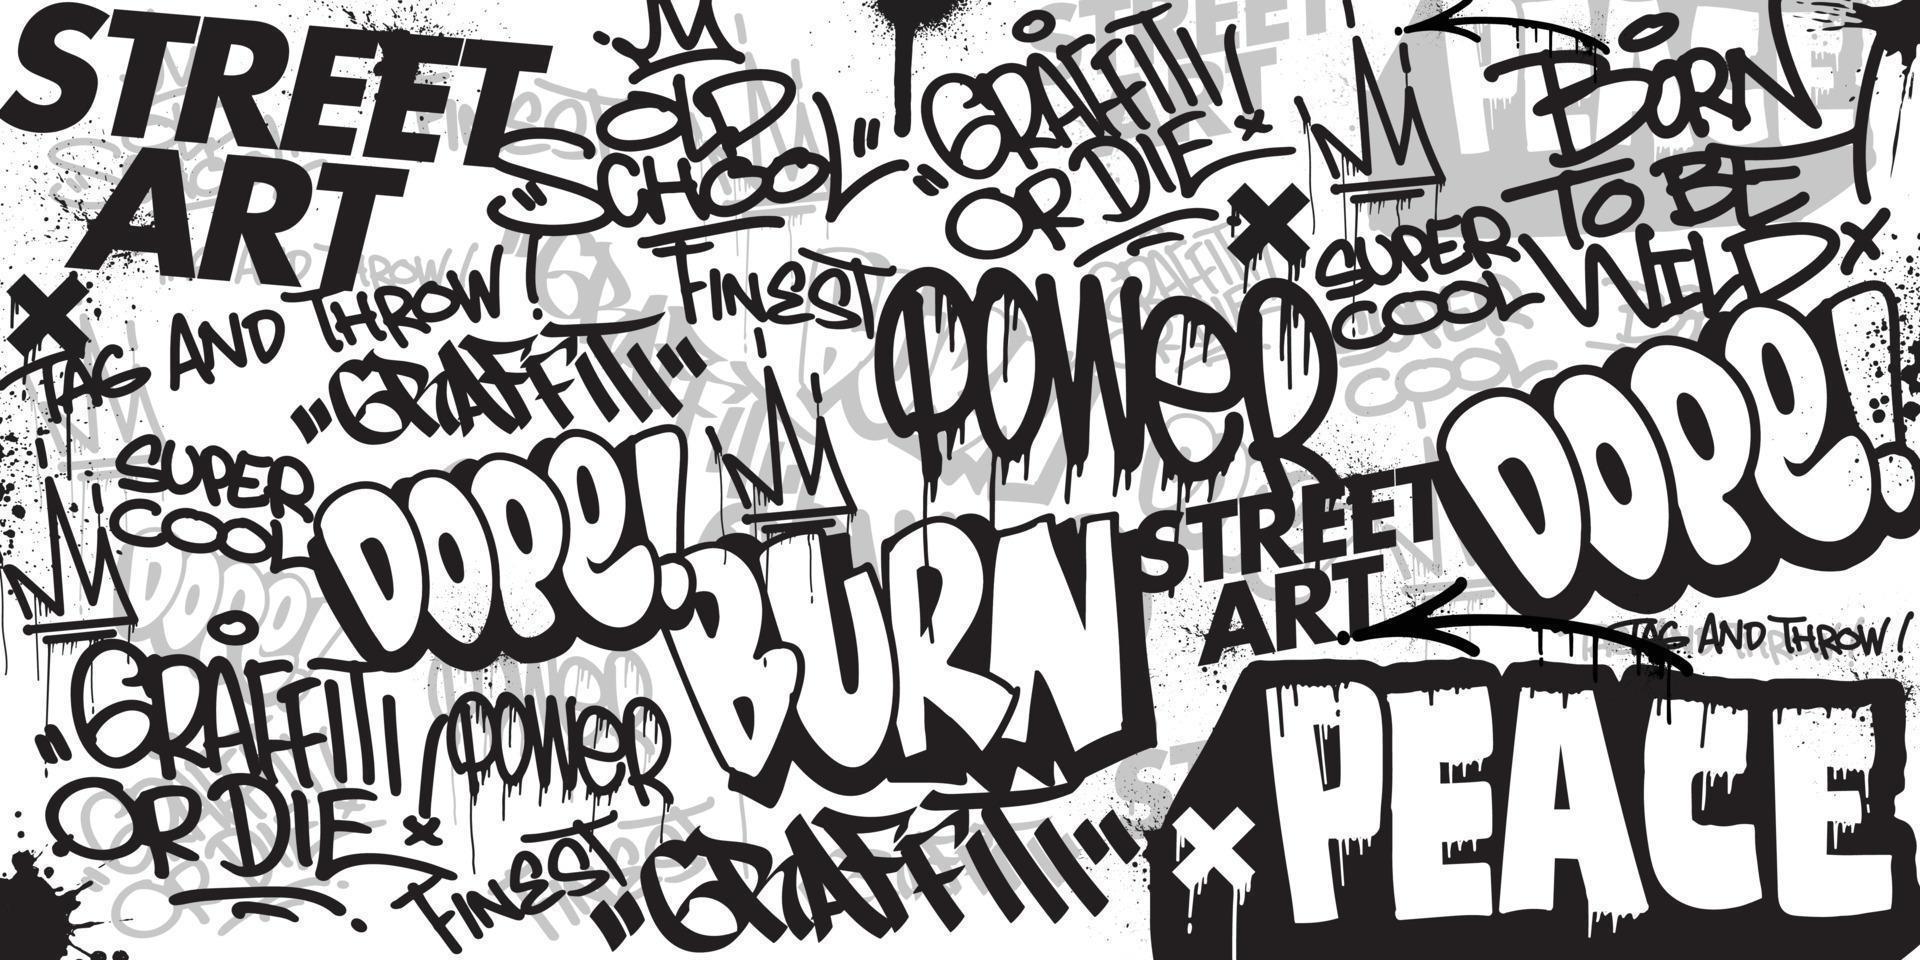 graffiti achtergrond met overgeven en taggen hand getekend stijl. straat kunst graffiti stedelijk thema voor afdrukken, spandoeken, en textiel in vector formaat.